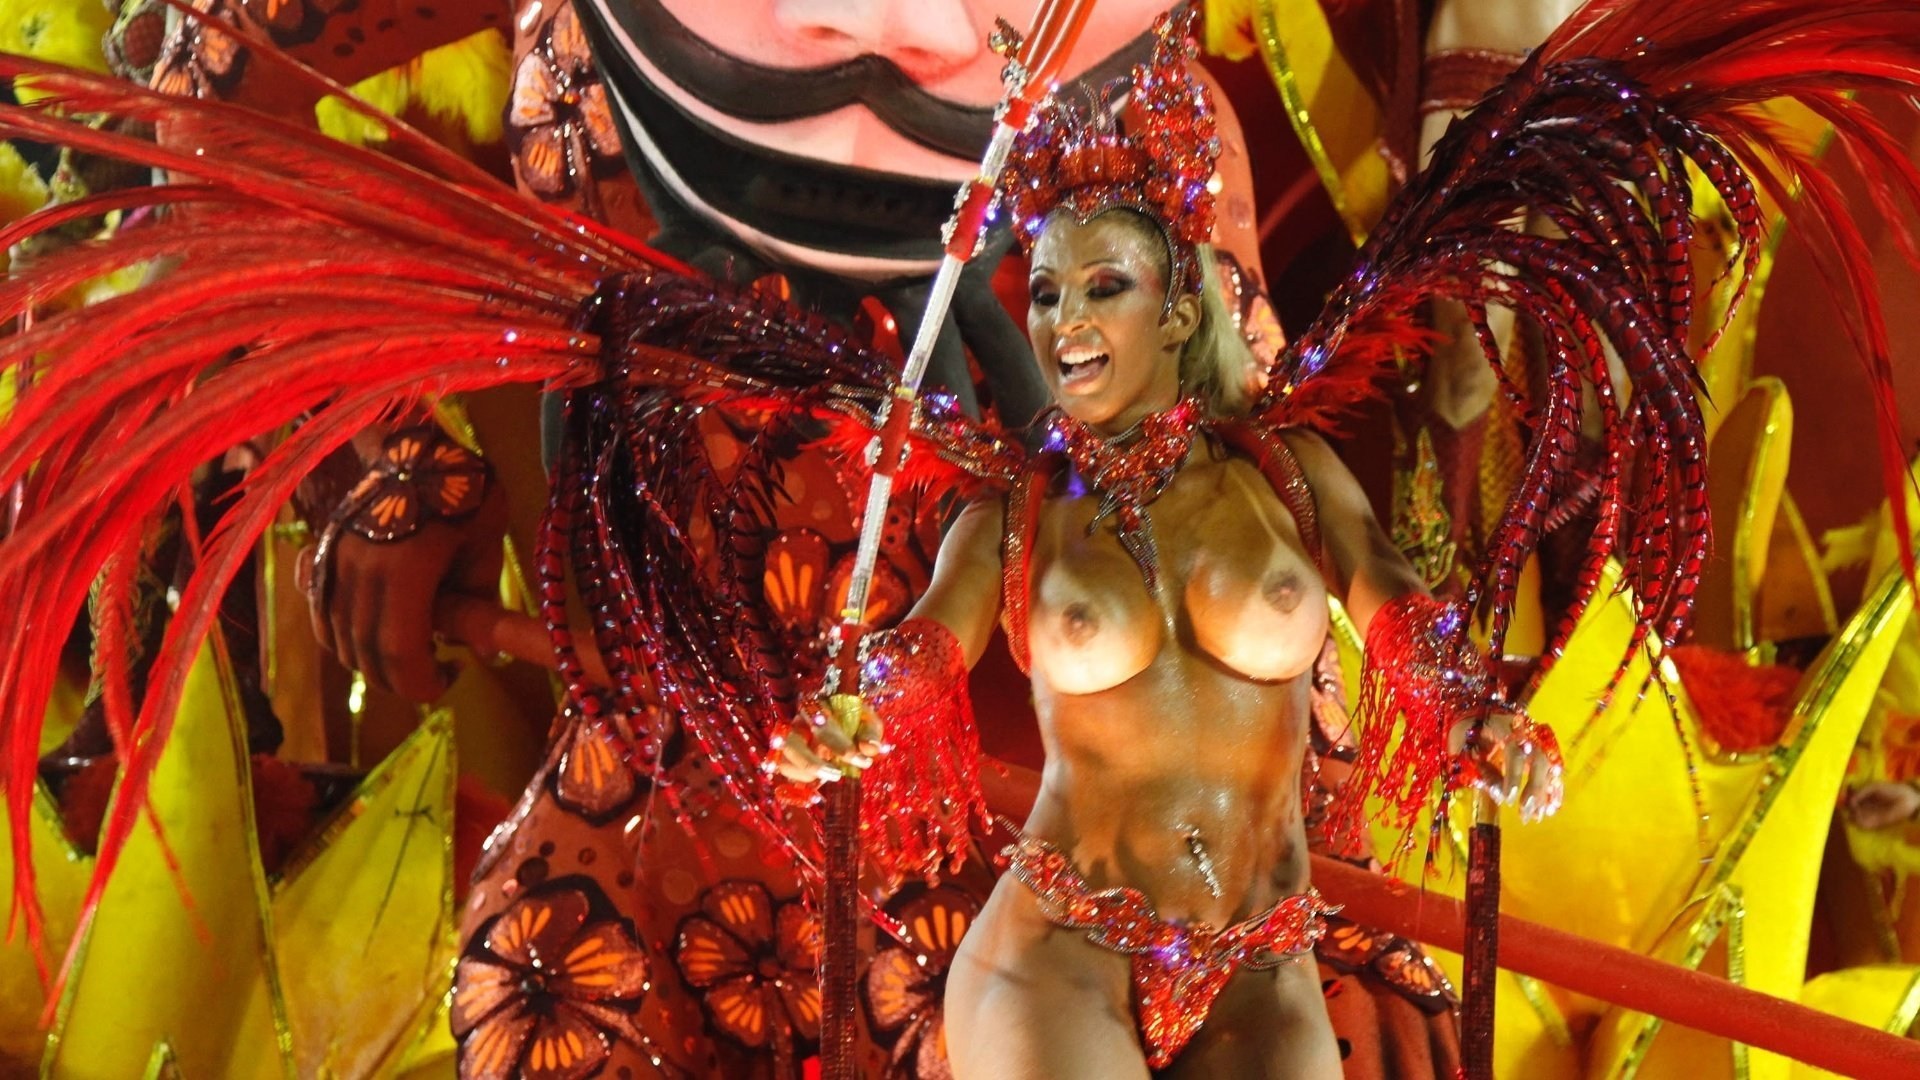 Бразильский карнавал удовольствий: они любят трахаться по полной!